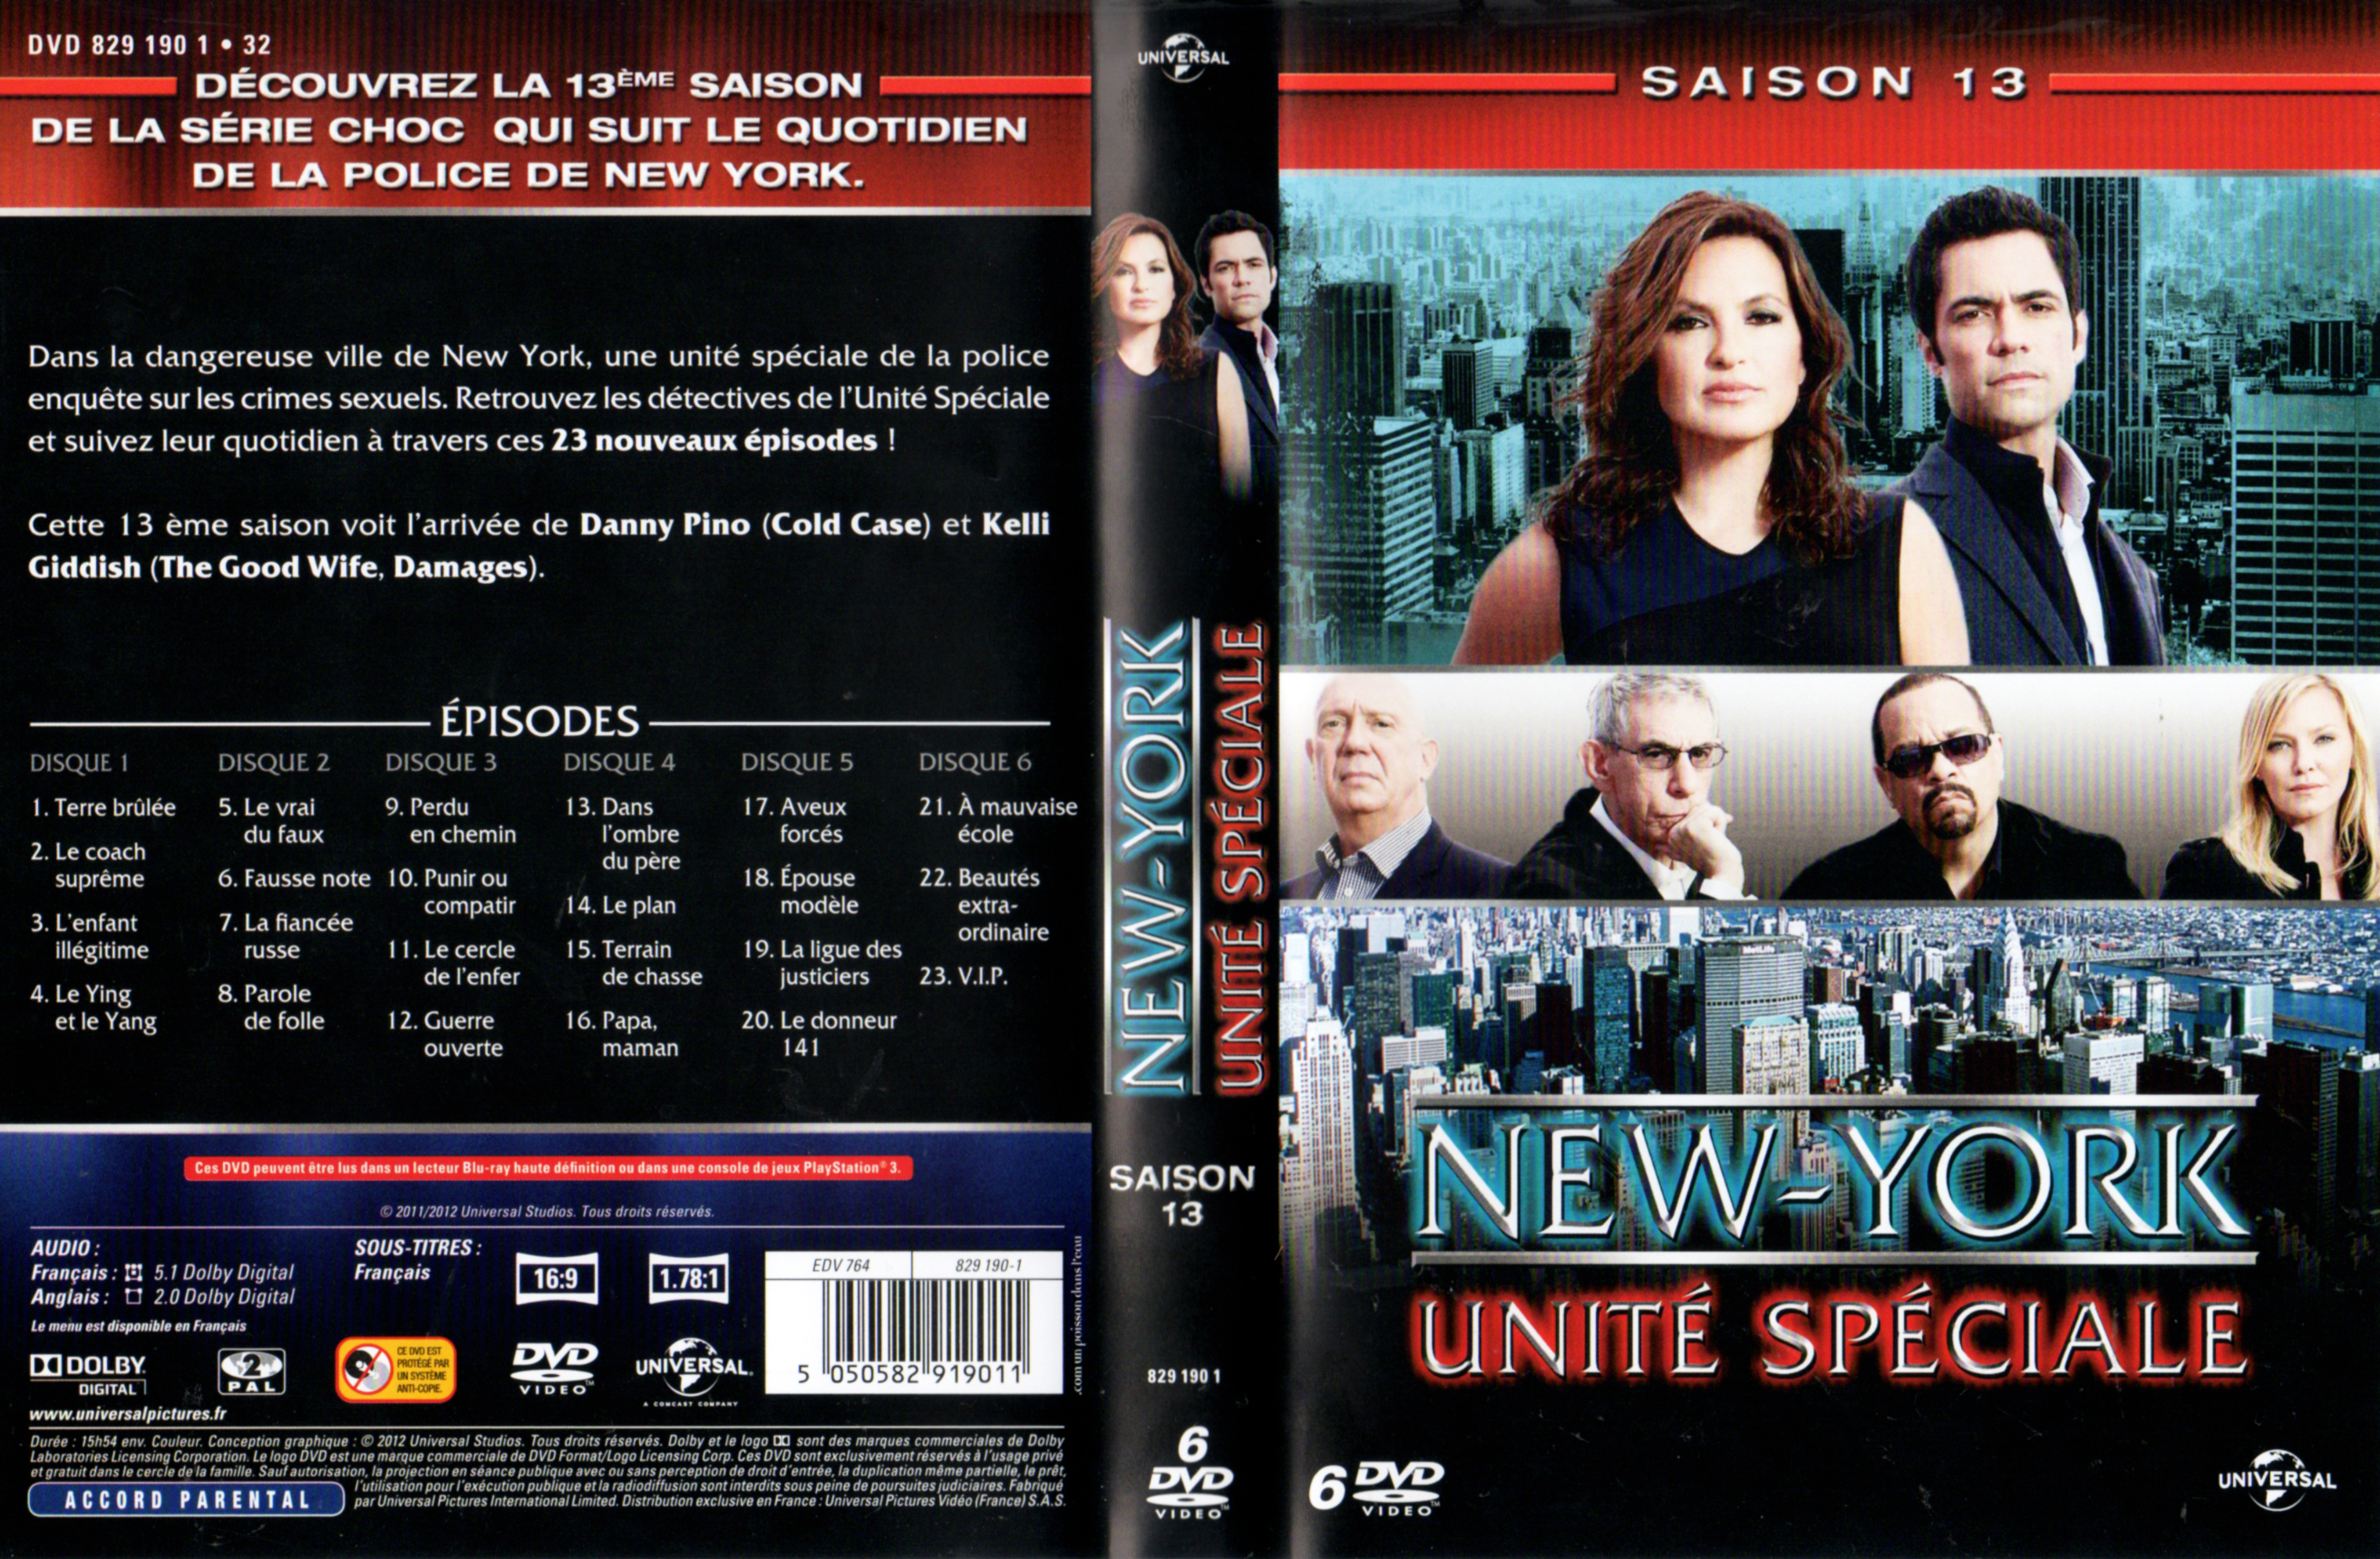 Jaquette DVD New York unit spciale saison 13 COFFRET